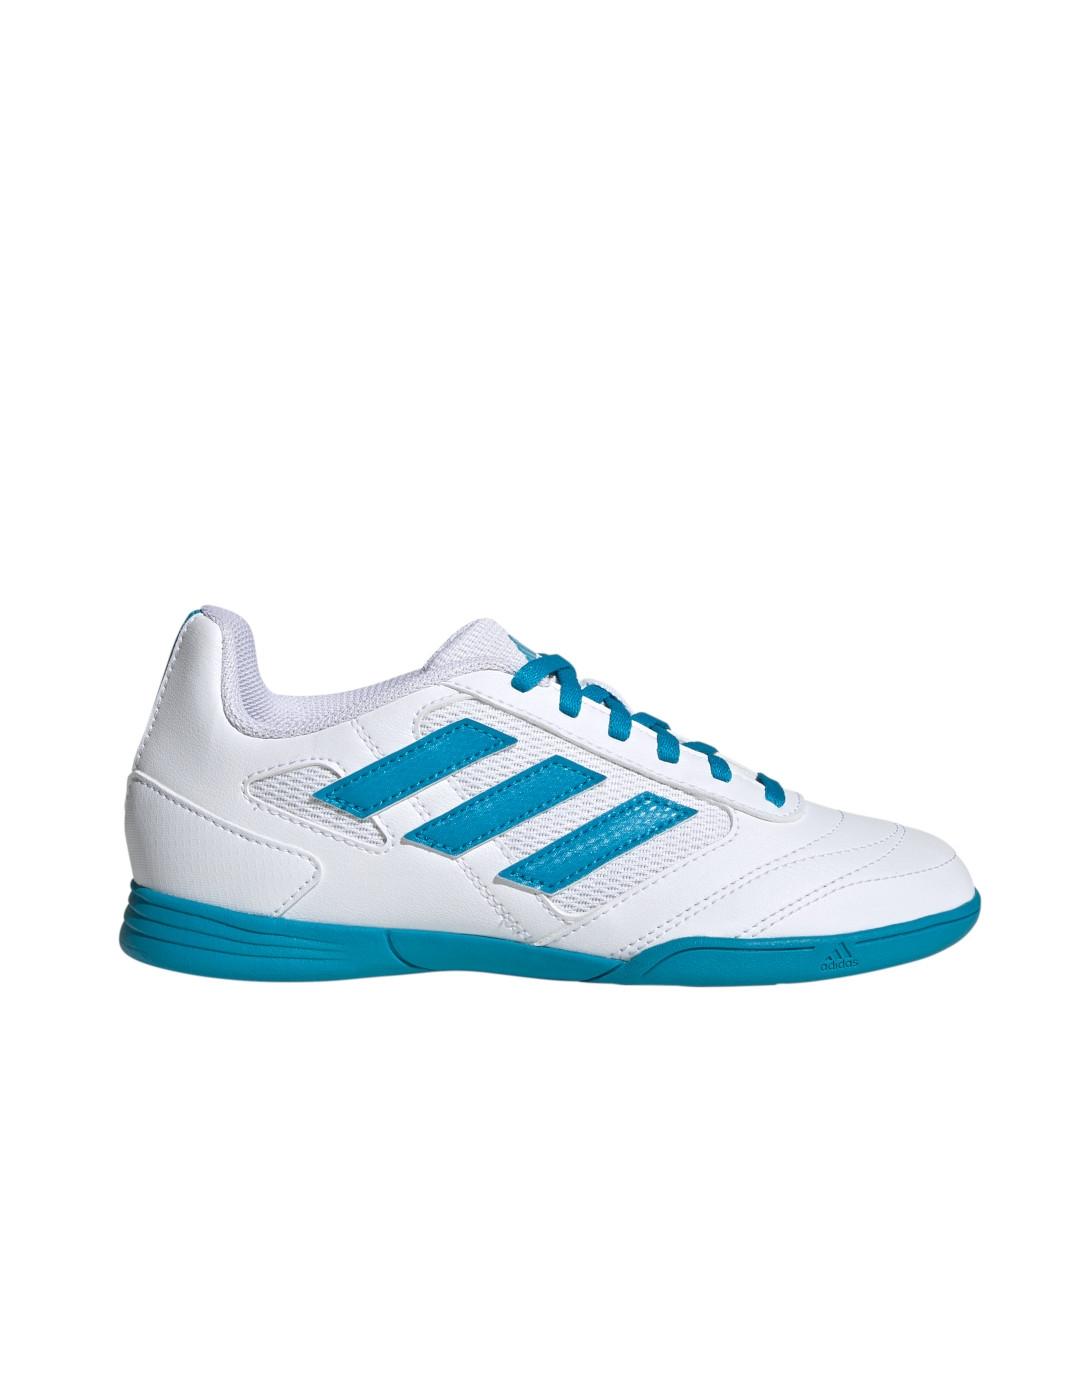 Munich – Gresca 604 – Indoor Soccer/Futsal – Calzado, color blanco/azul